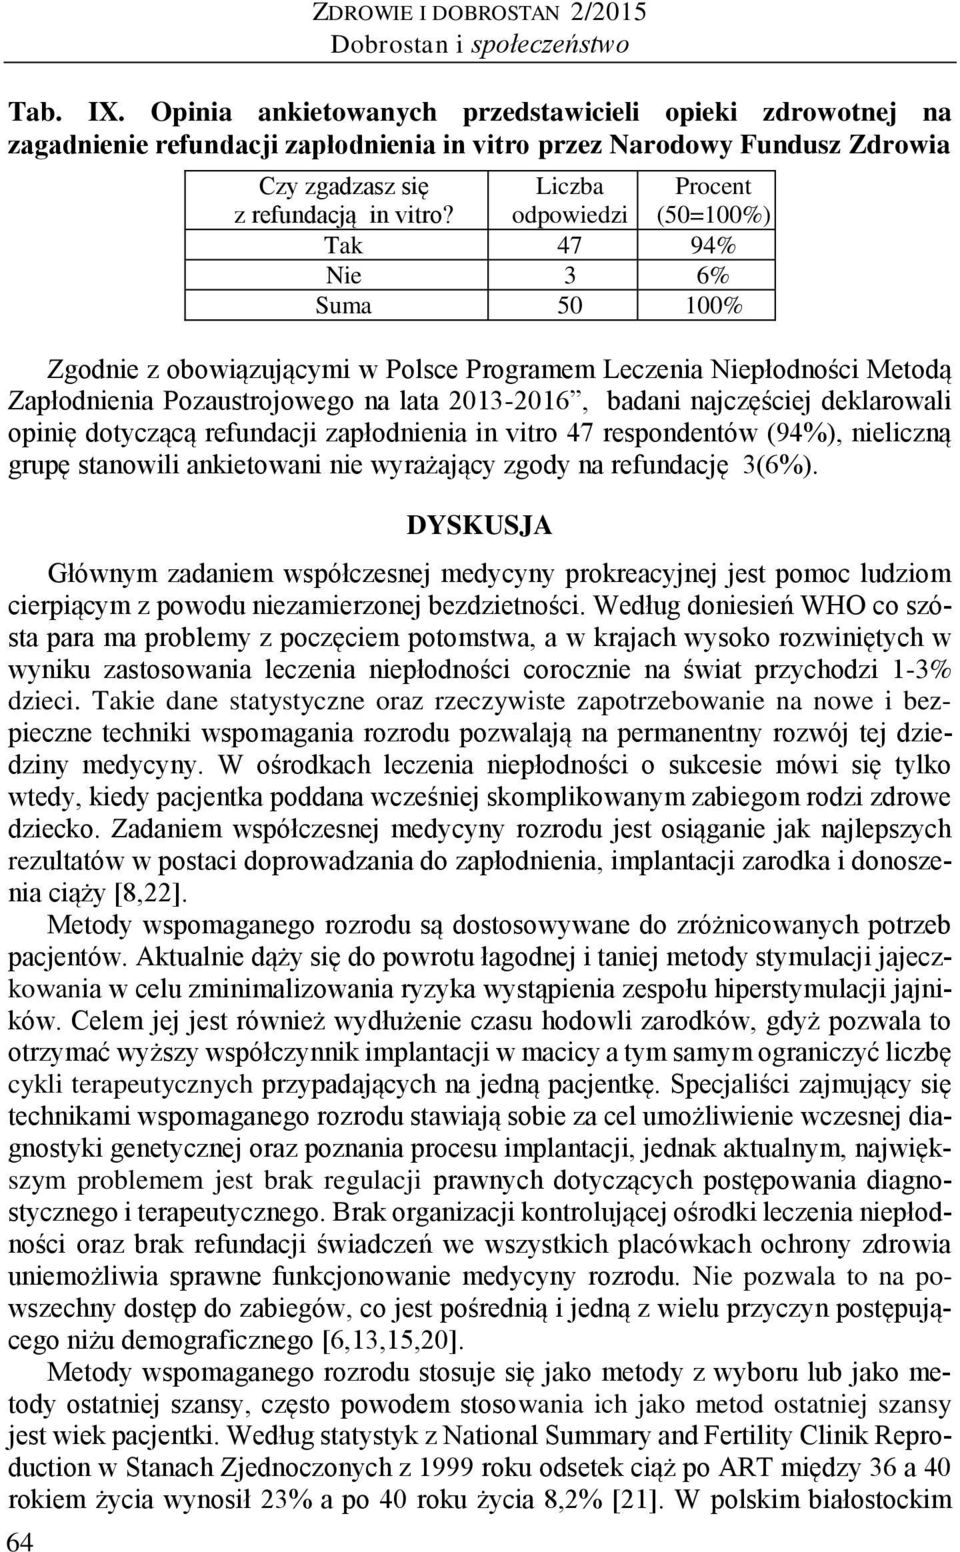 Liczba odpowiedzi Tak 47 94% Nie 3 6% Suma 50 100% Procent (50=100%) Zgodnie z obowiązującymi w Polsce Programem Leczenia Niepłodności Metodą Zapłodnienia Pozaustrojowego na lata 2013-2016, badani